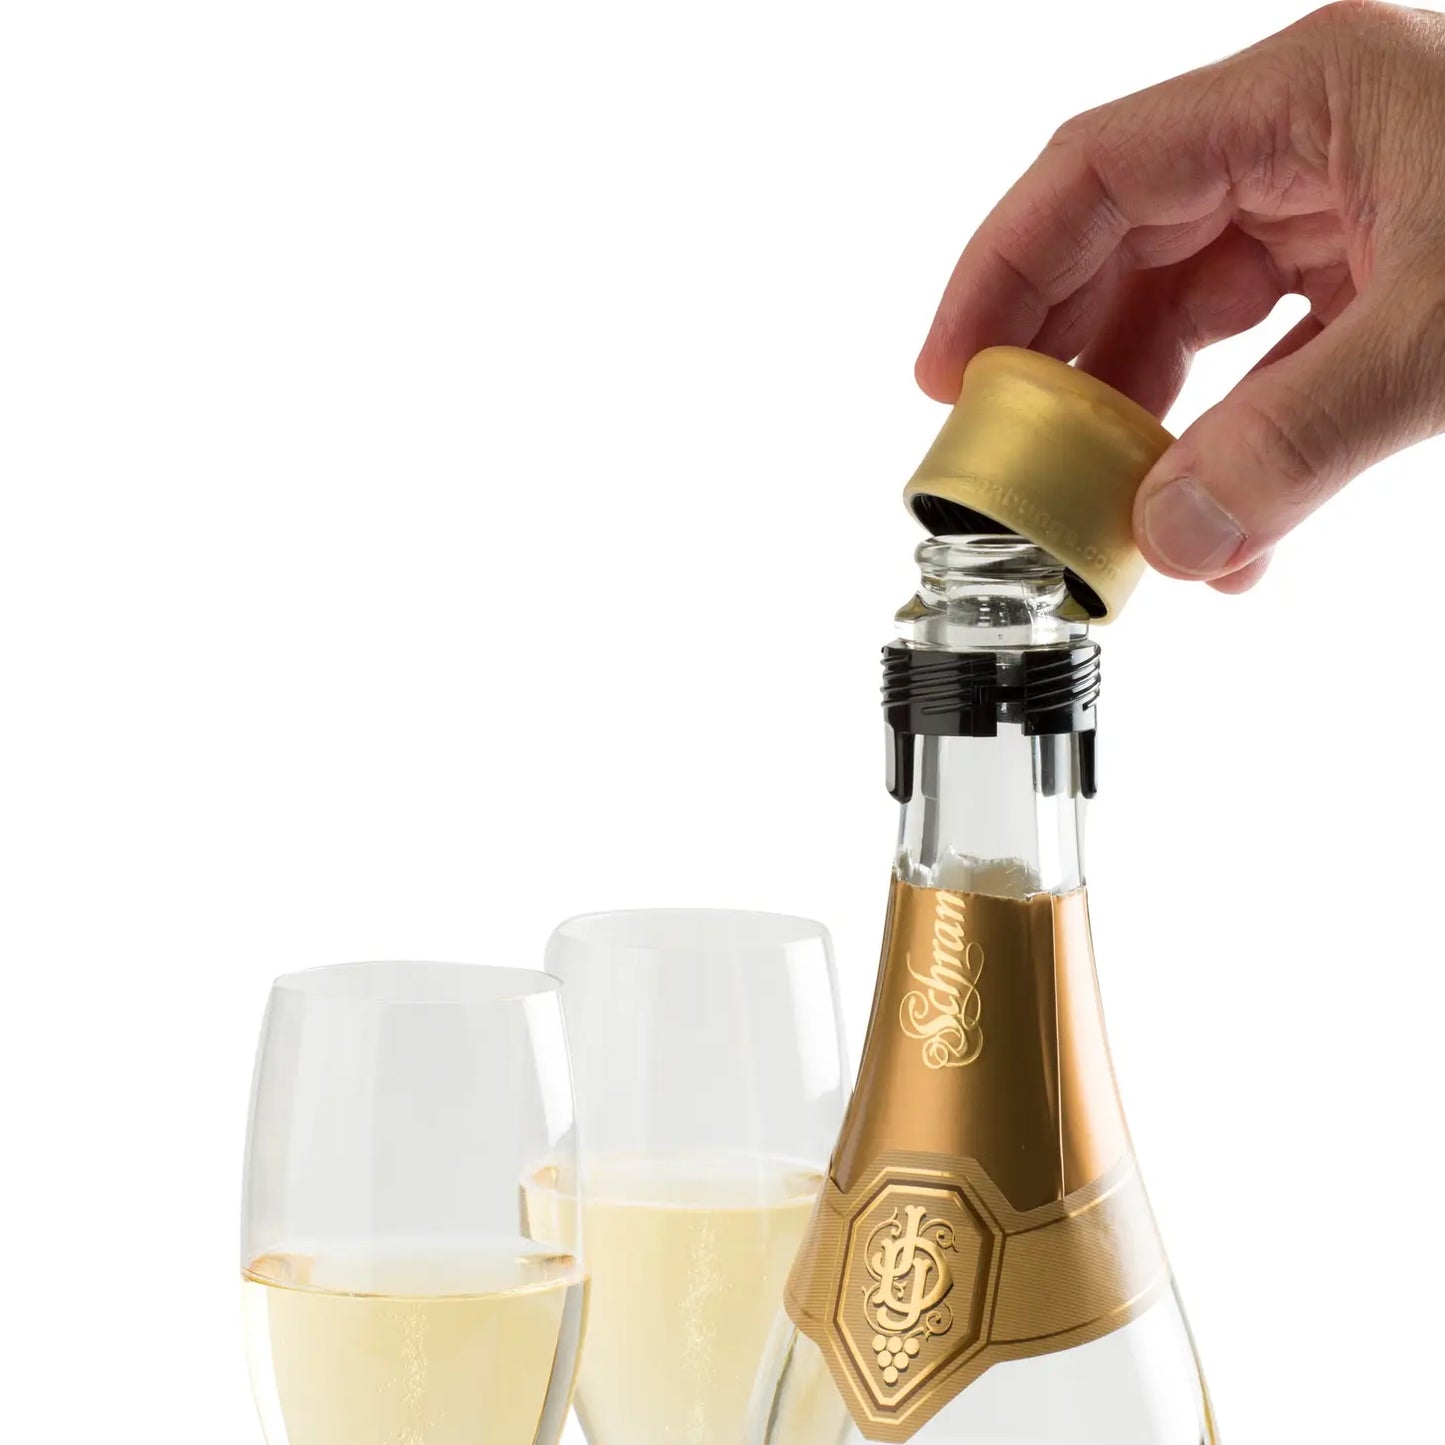 CapaBubbles Champagne stopper - Celebrate